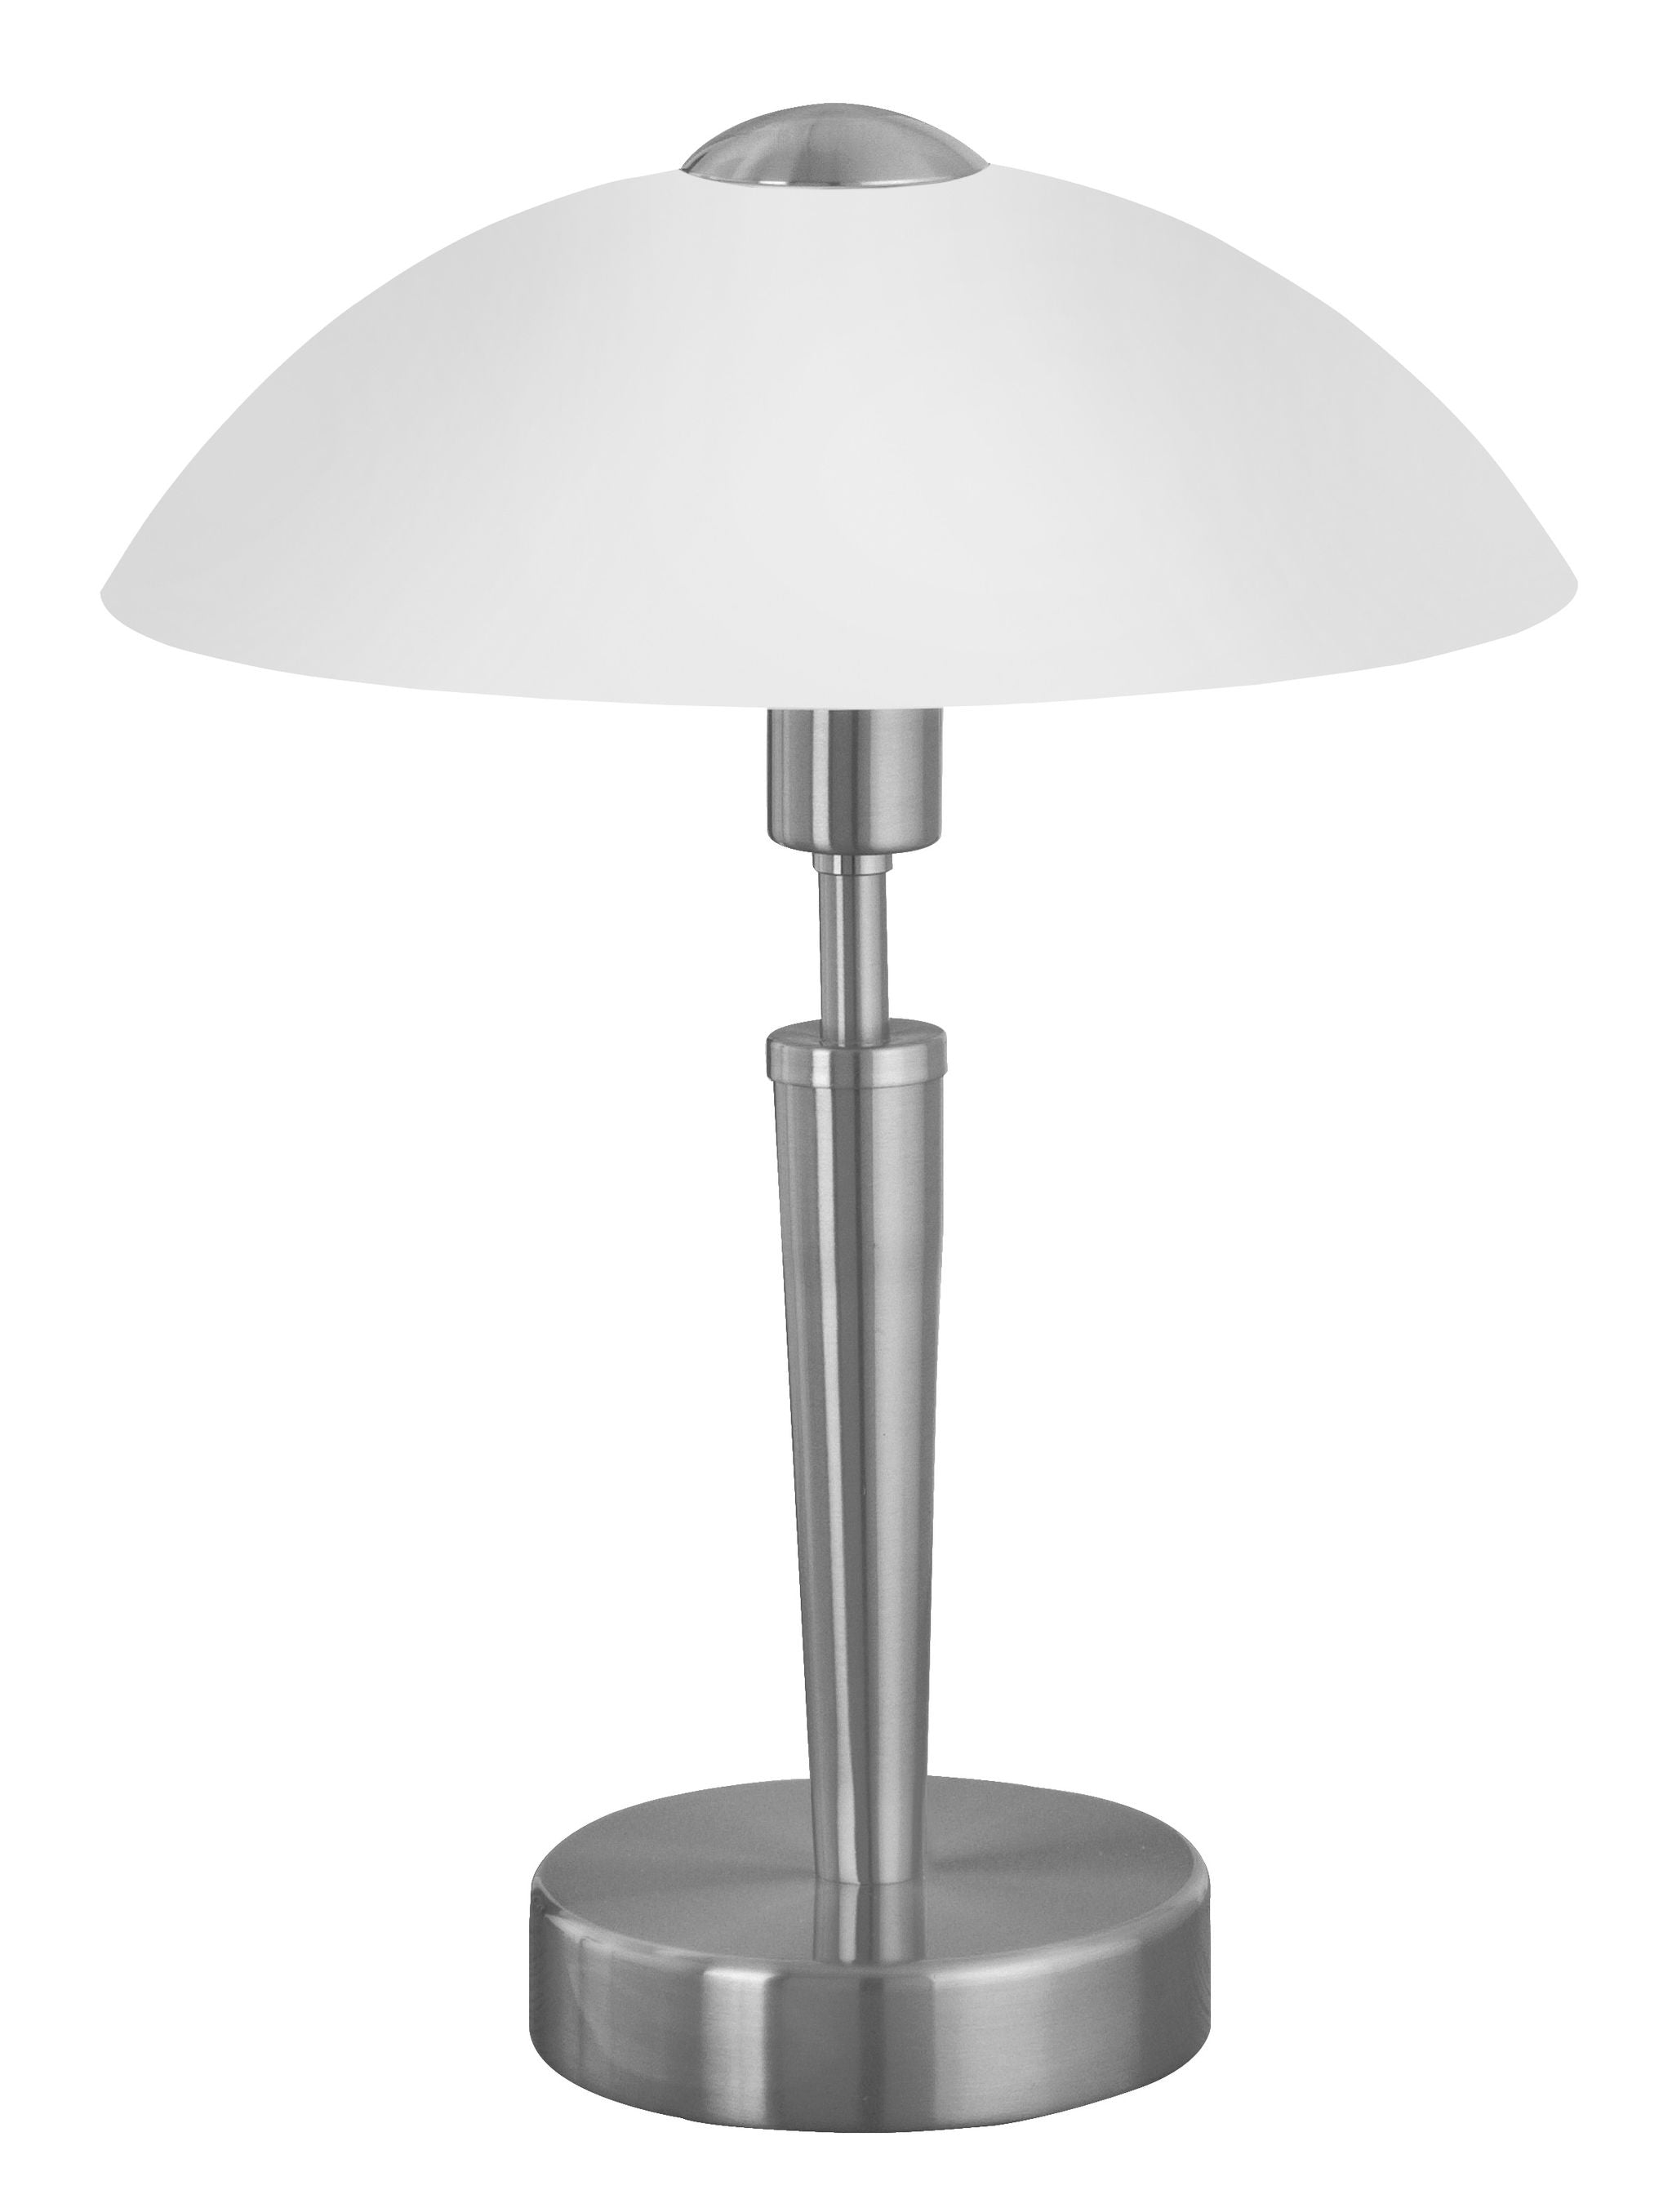 Solo 1 Lampe sur table Nickel - 85104A | EGLO